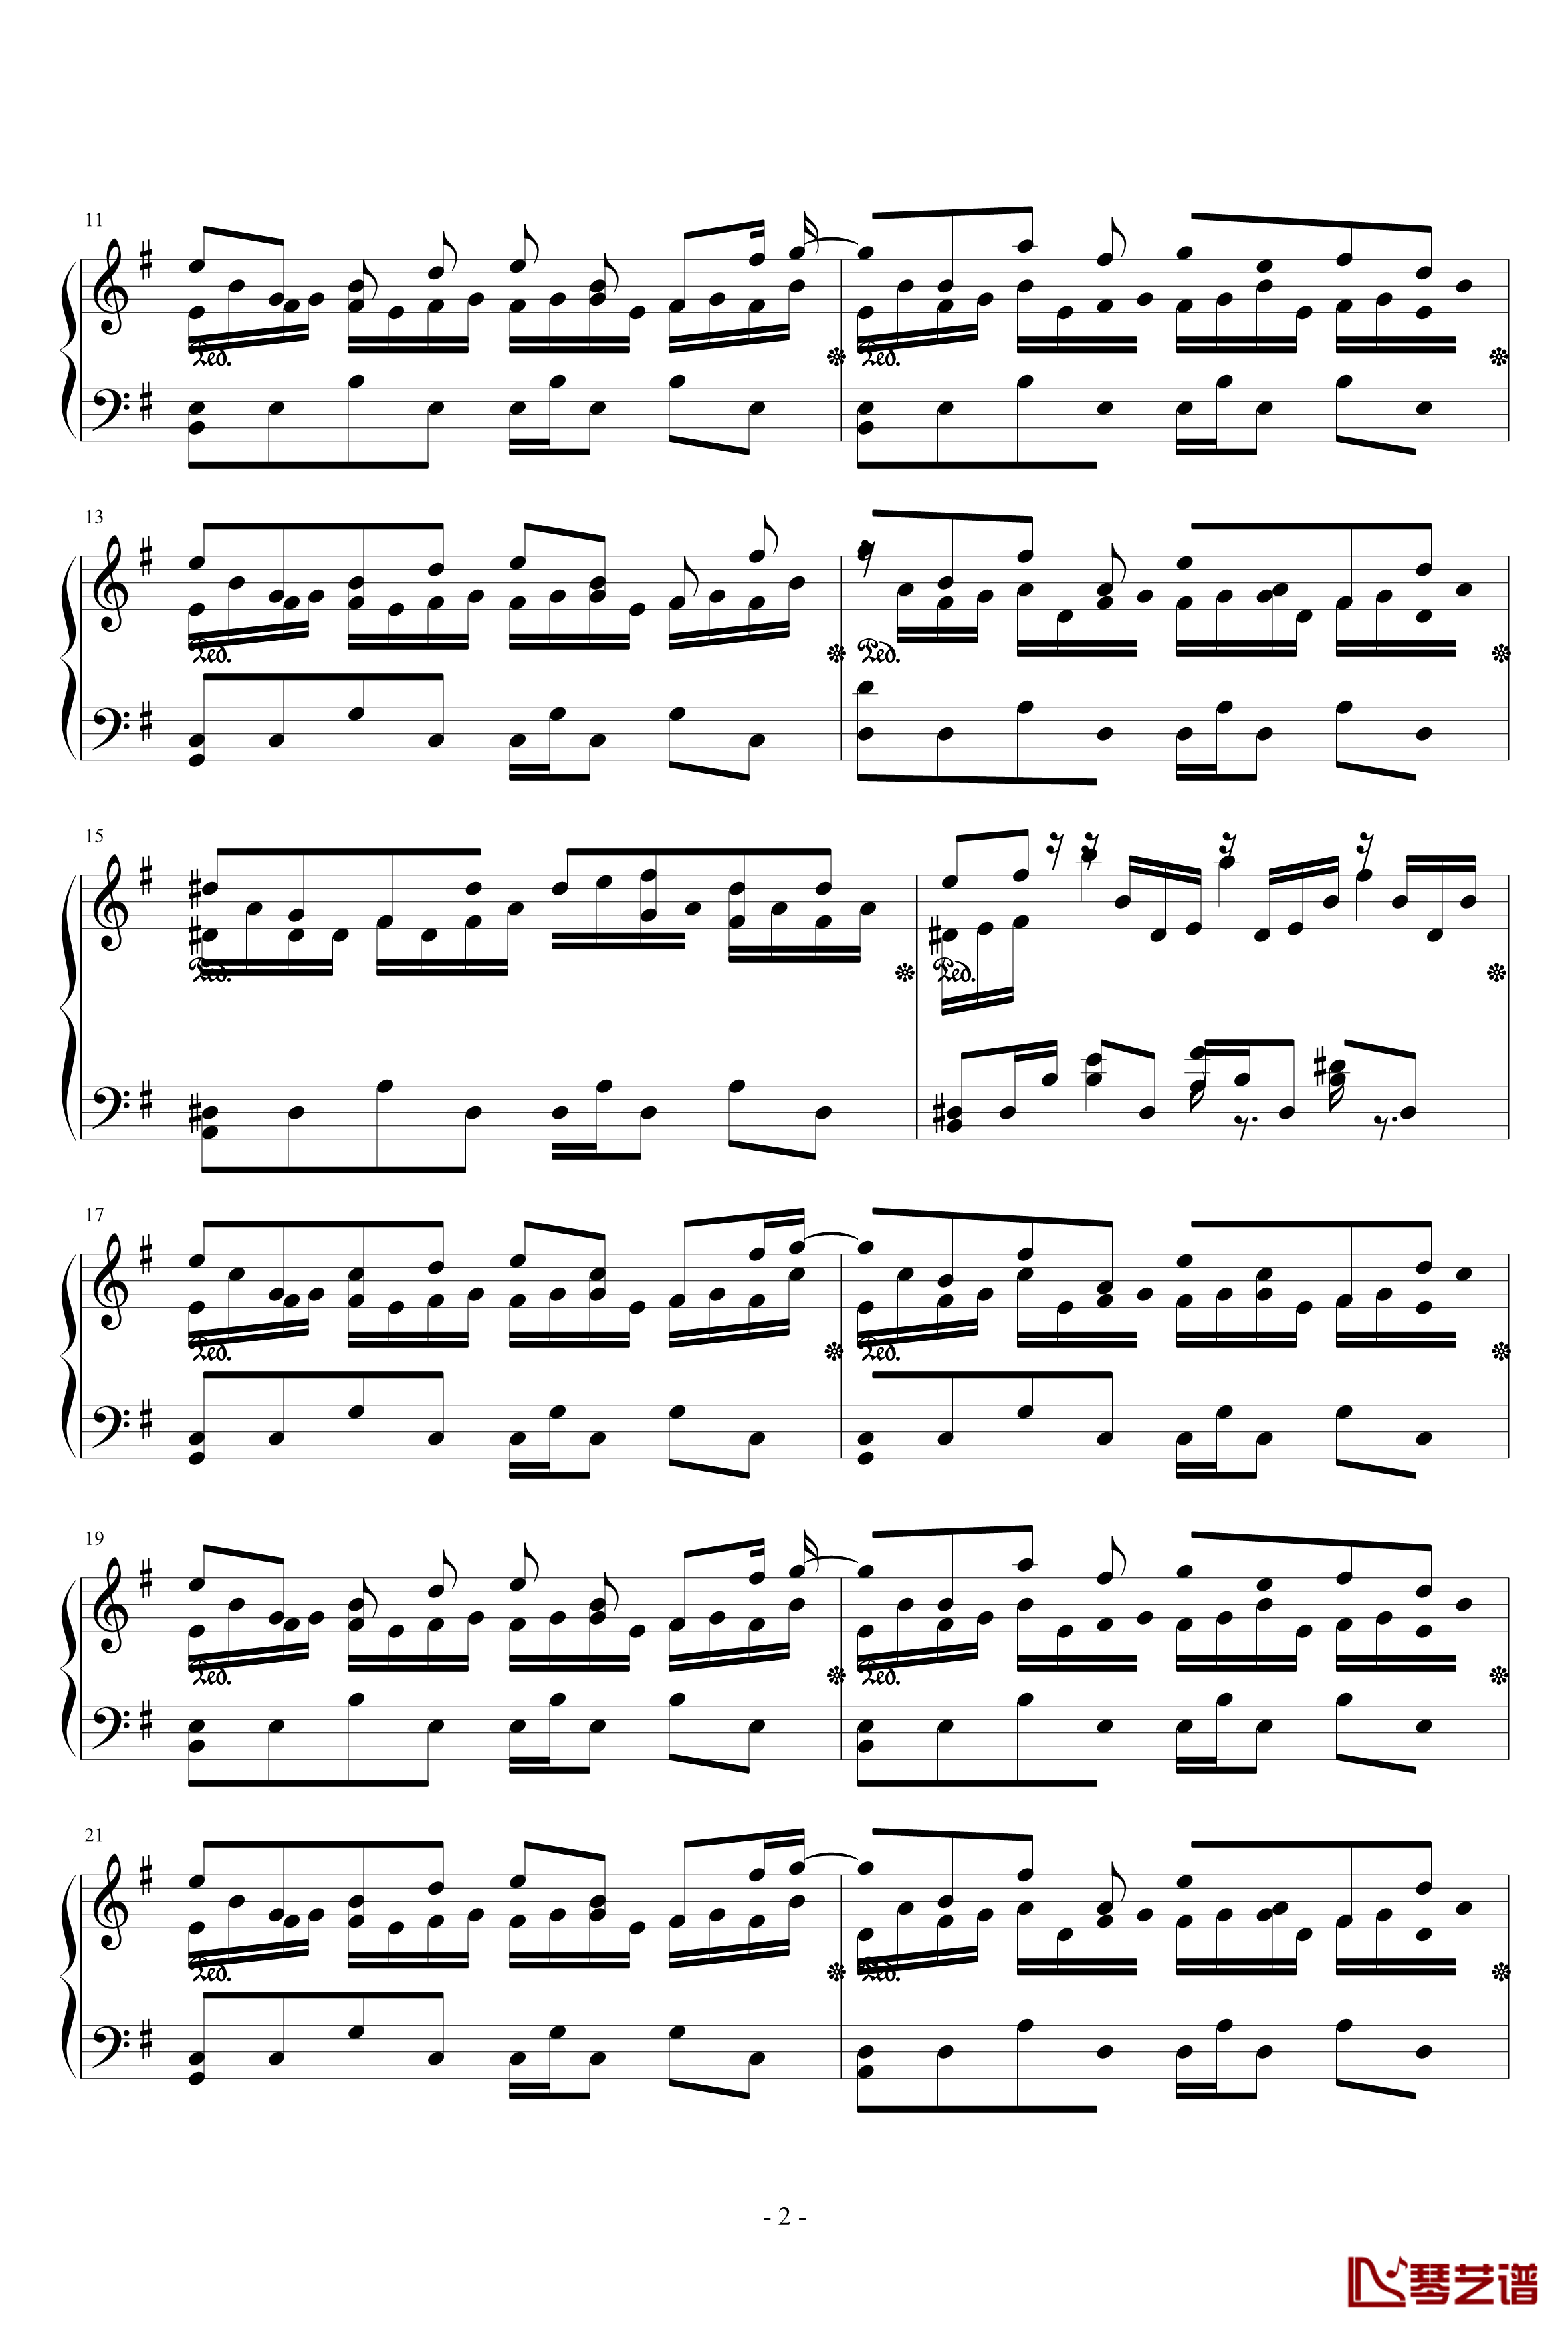 ヴォヤージュ1969钢琴谱-HARD-东方永夜抄第6面-东方project2